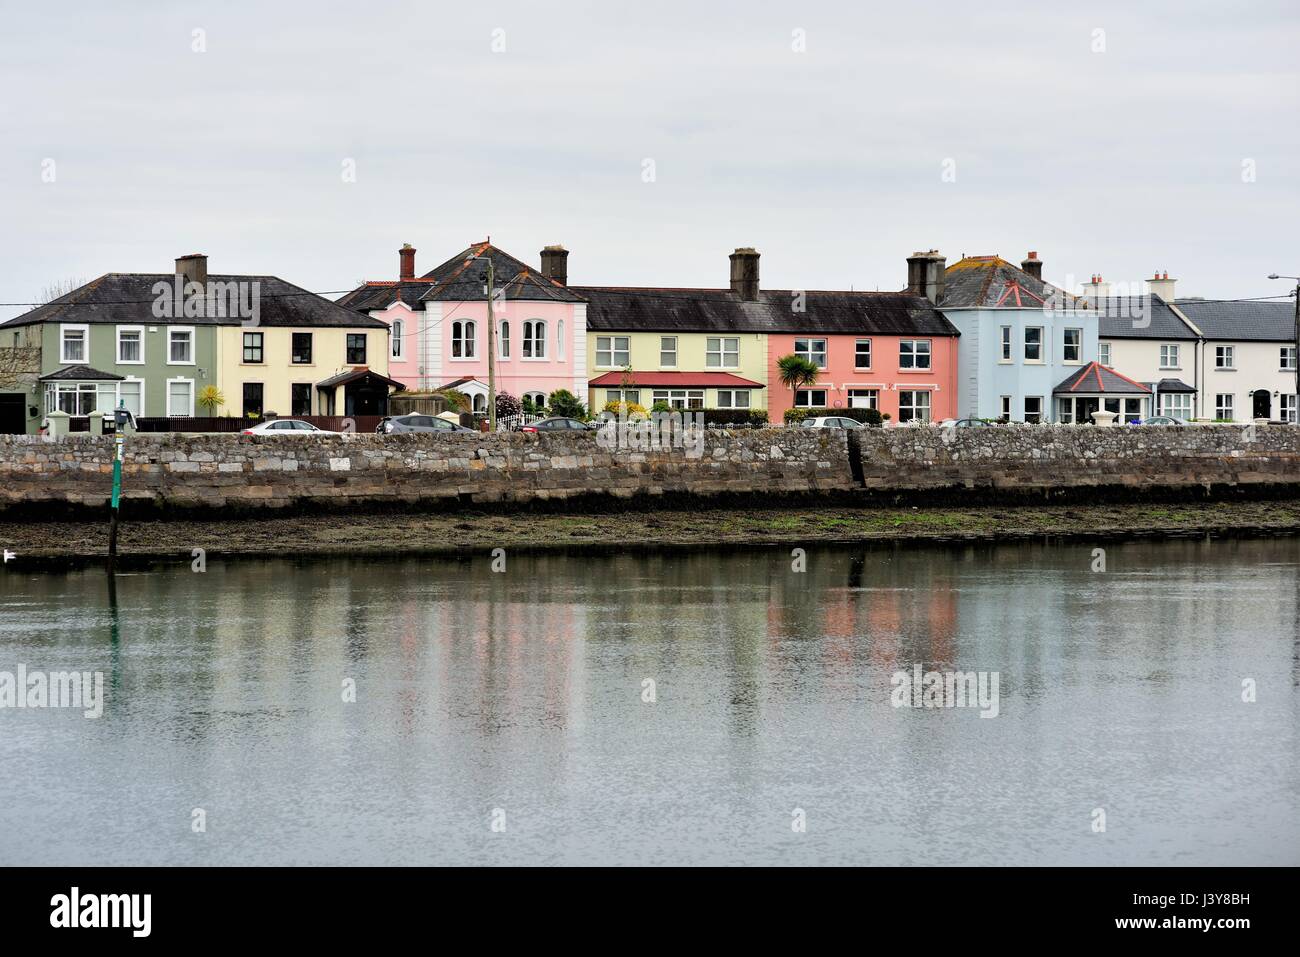 Bunte Häuser und Gebäude säumen einen Teil von Dungarvan Hafen in der irischen Küste Gemeinschaft von Dungarvan, County Waterford. Stockfoto